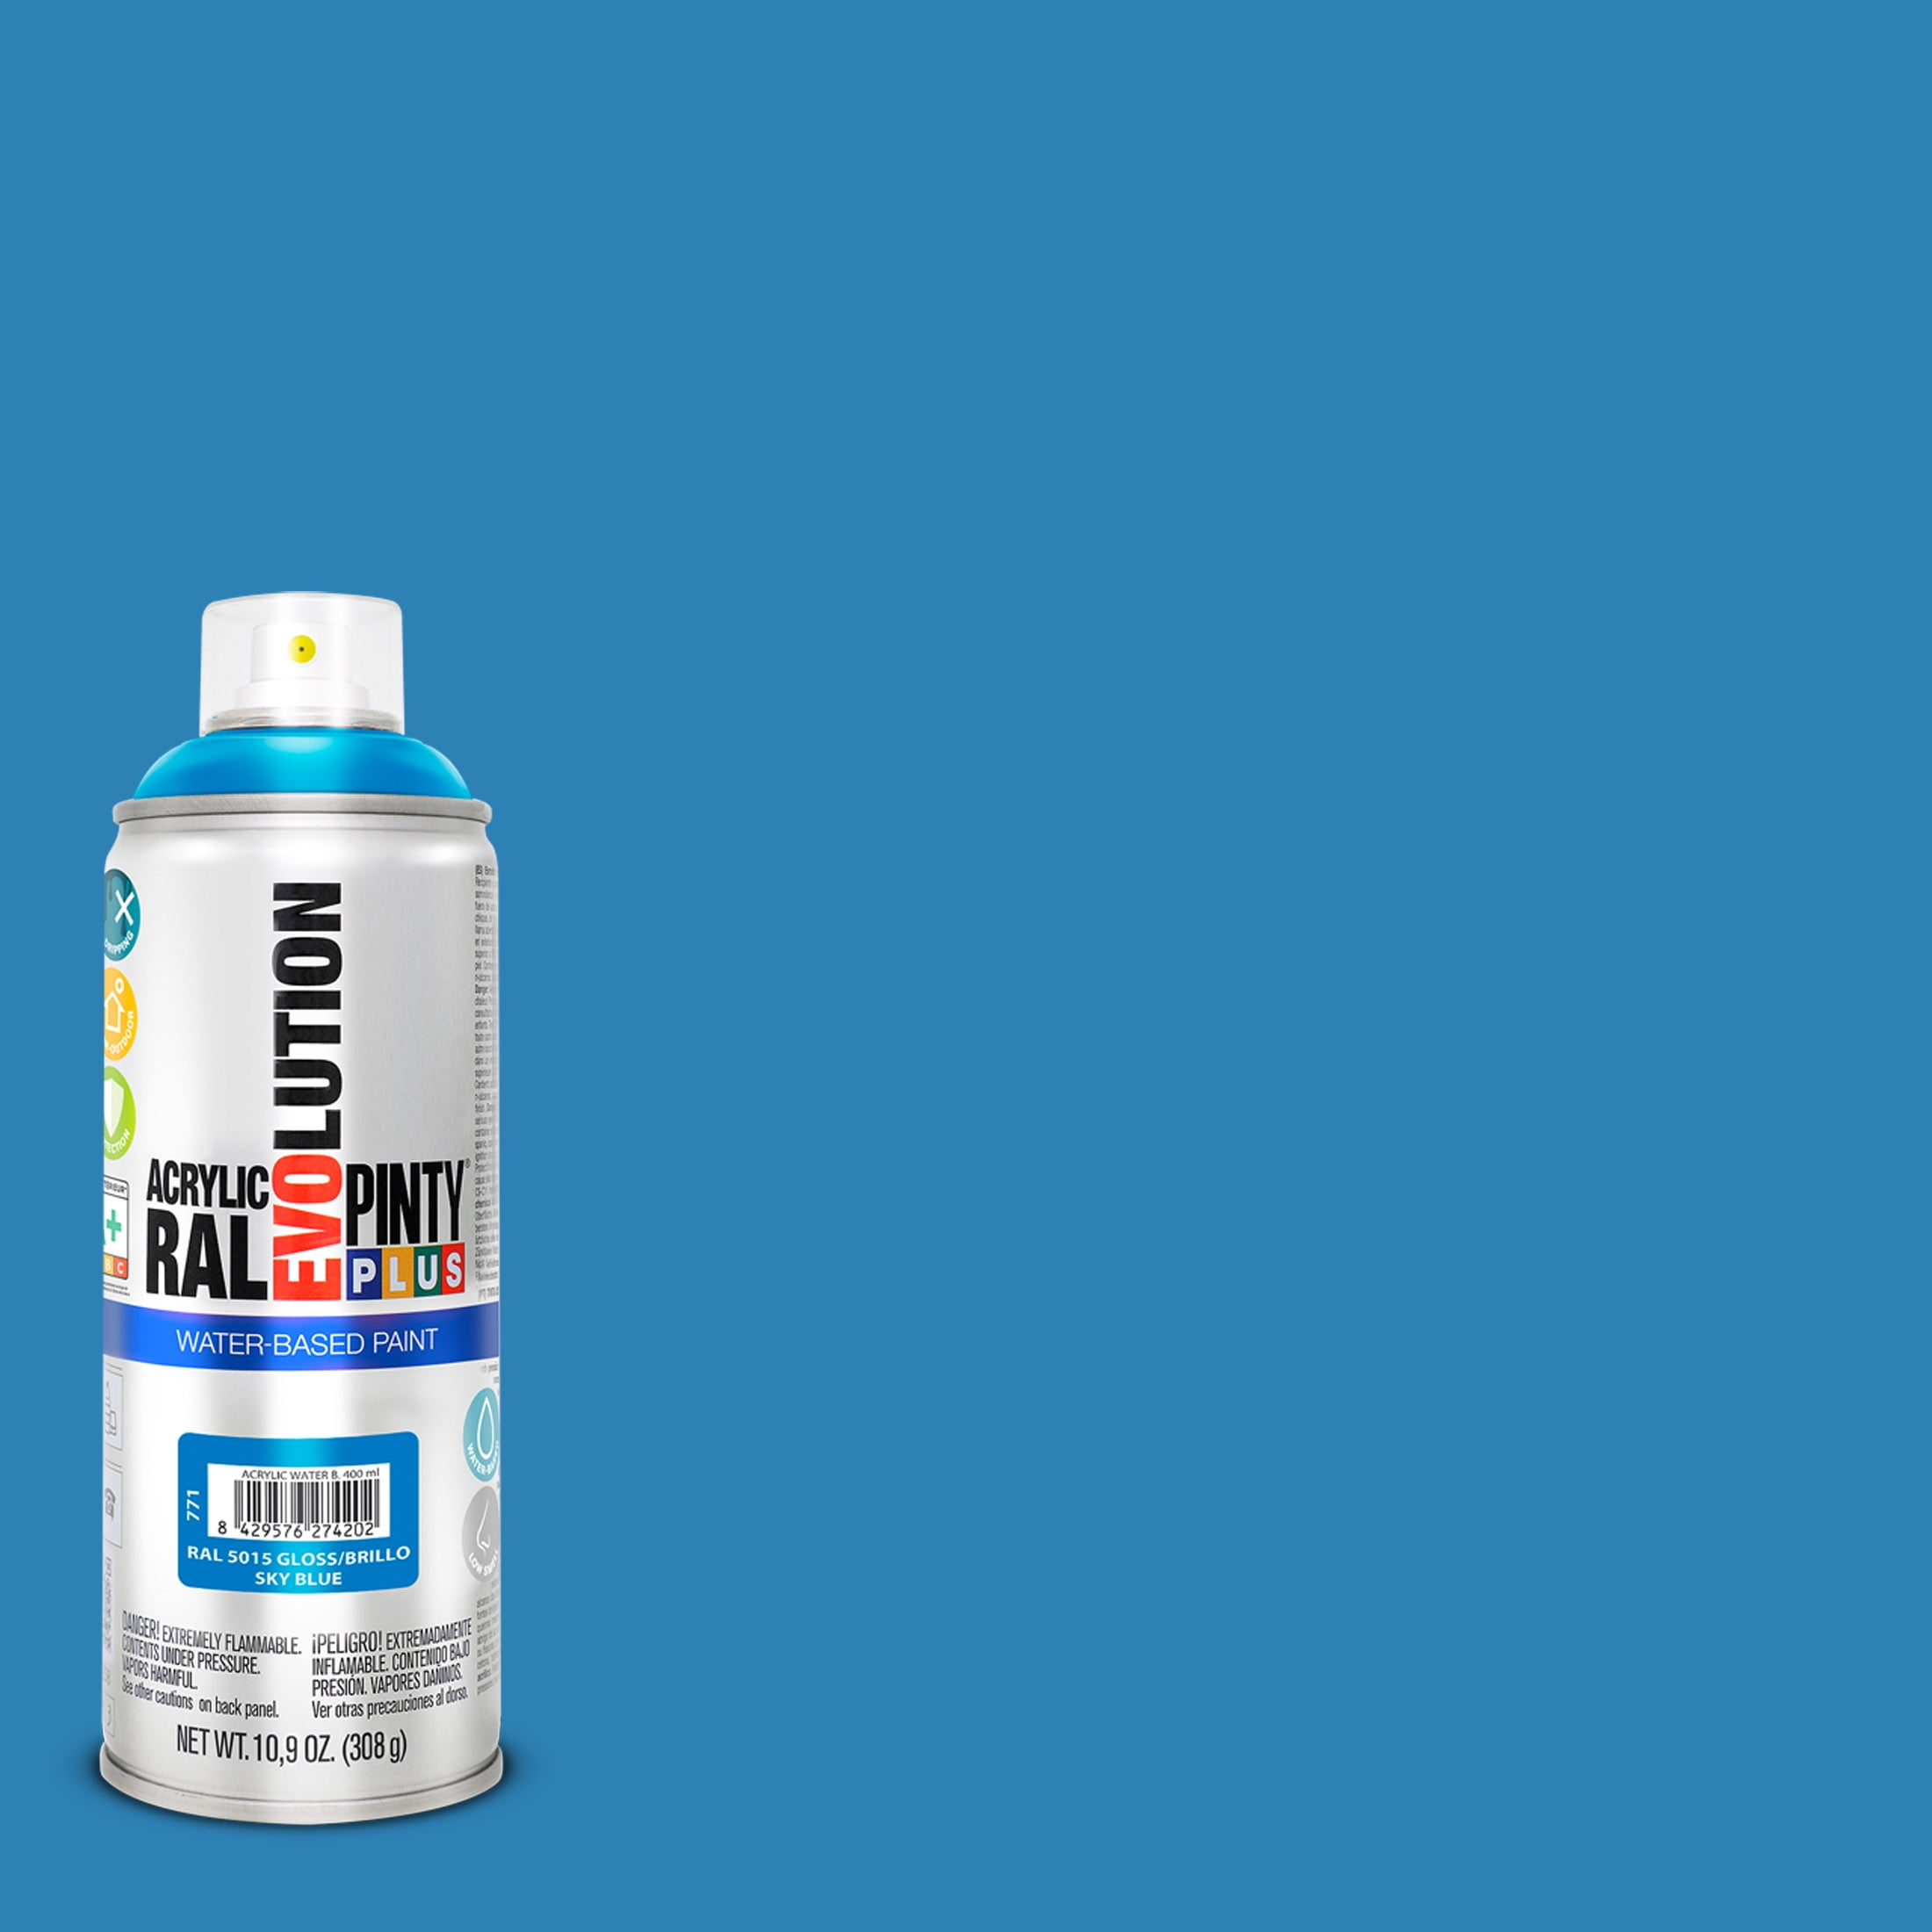 The Army Painter Color Primer Spray Paint, Crystal Blue, 400ml- Acrylic  Spray 